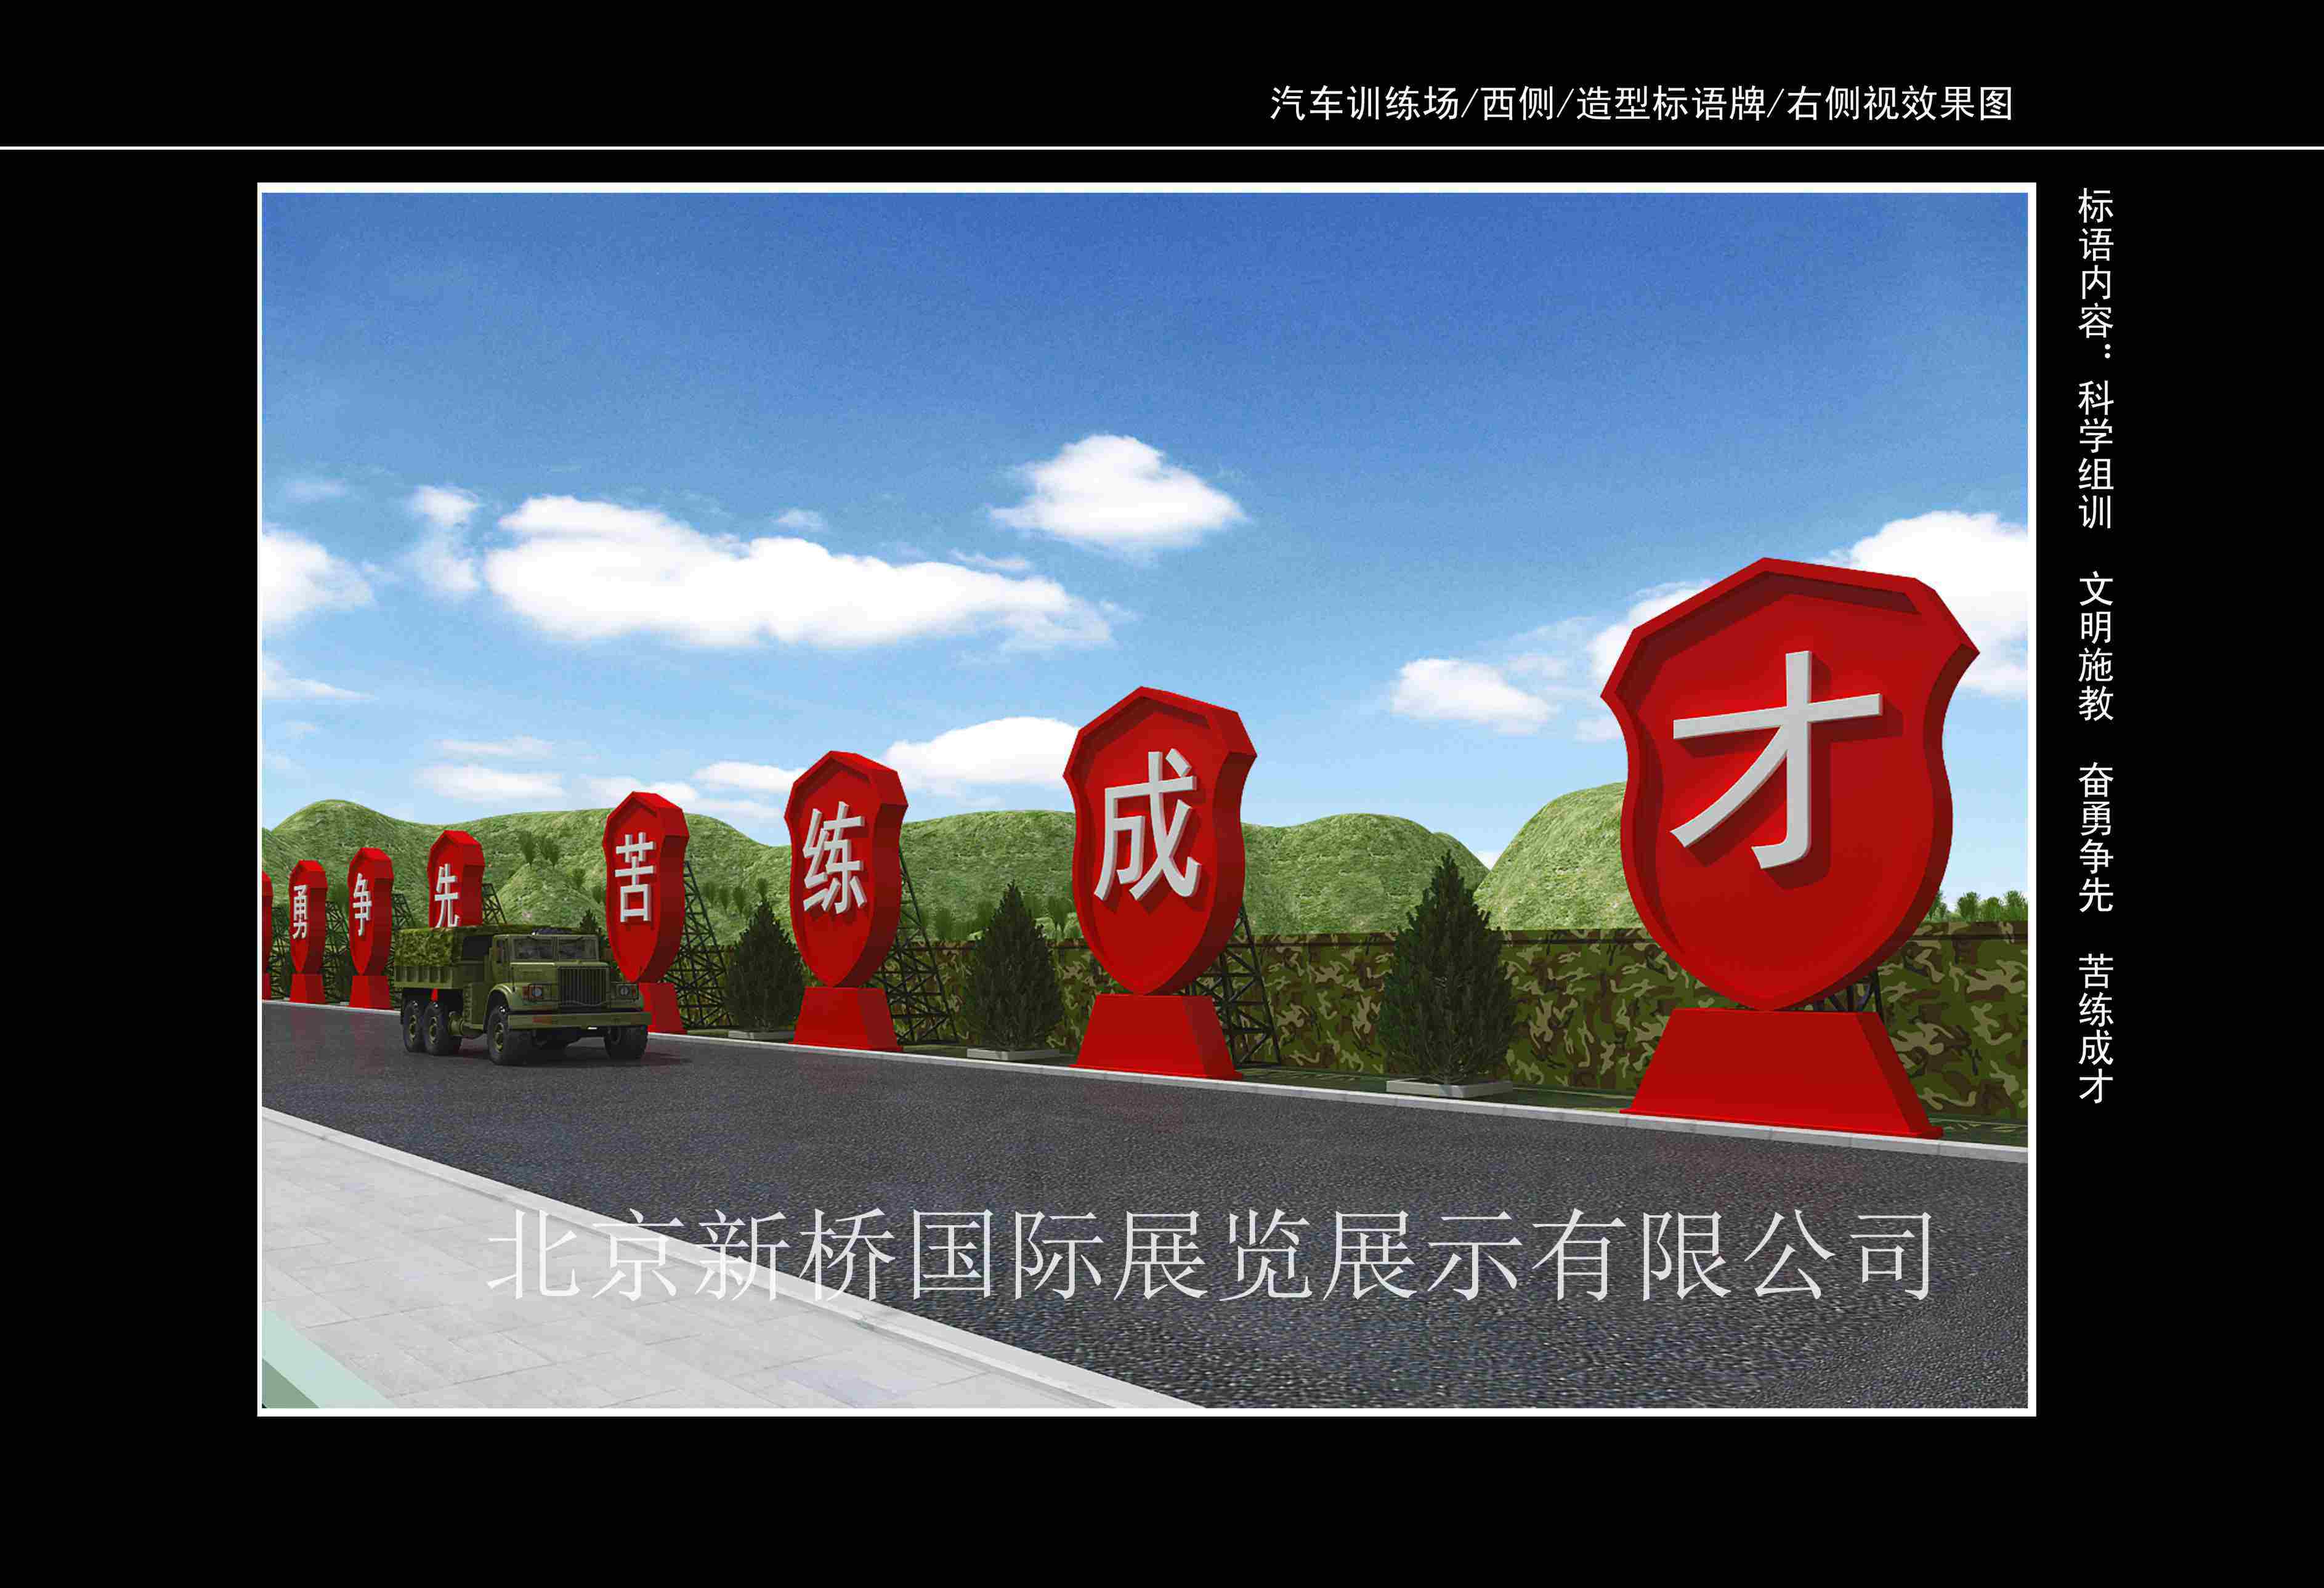 北京新桥文化 景观小品设计 景观雕塑设计与施工 文化长廊设计 浮雕墙设计